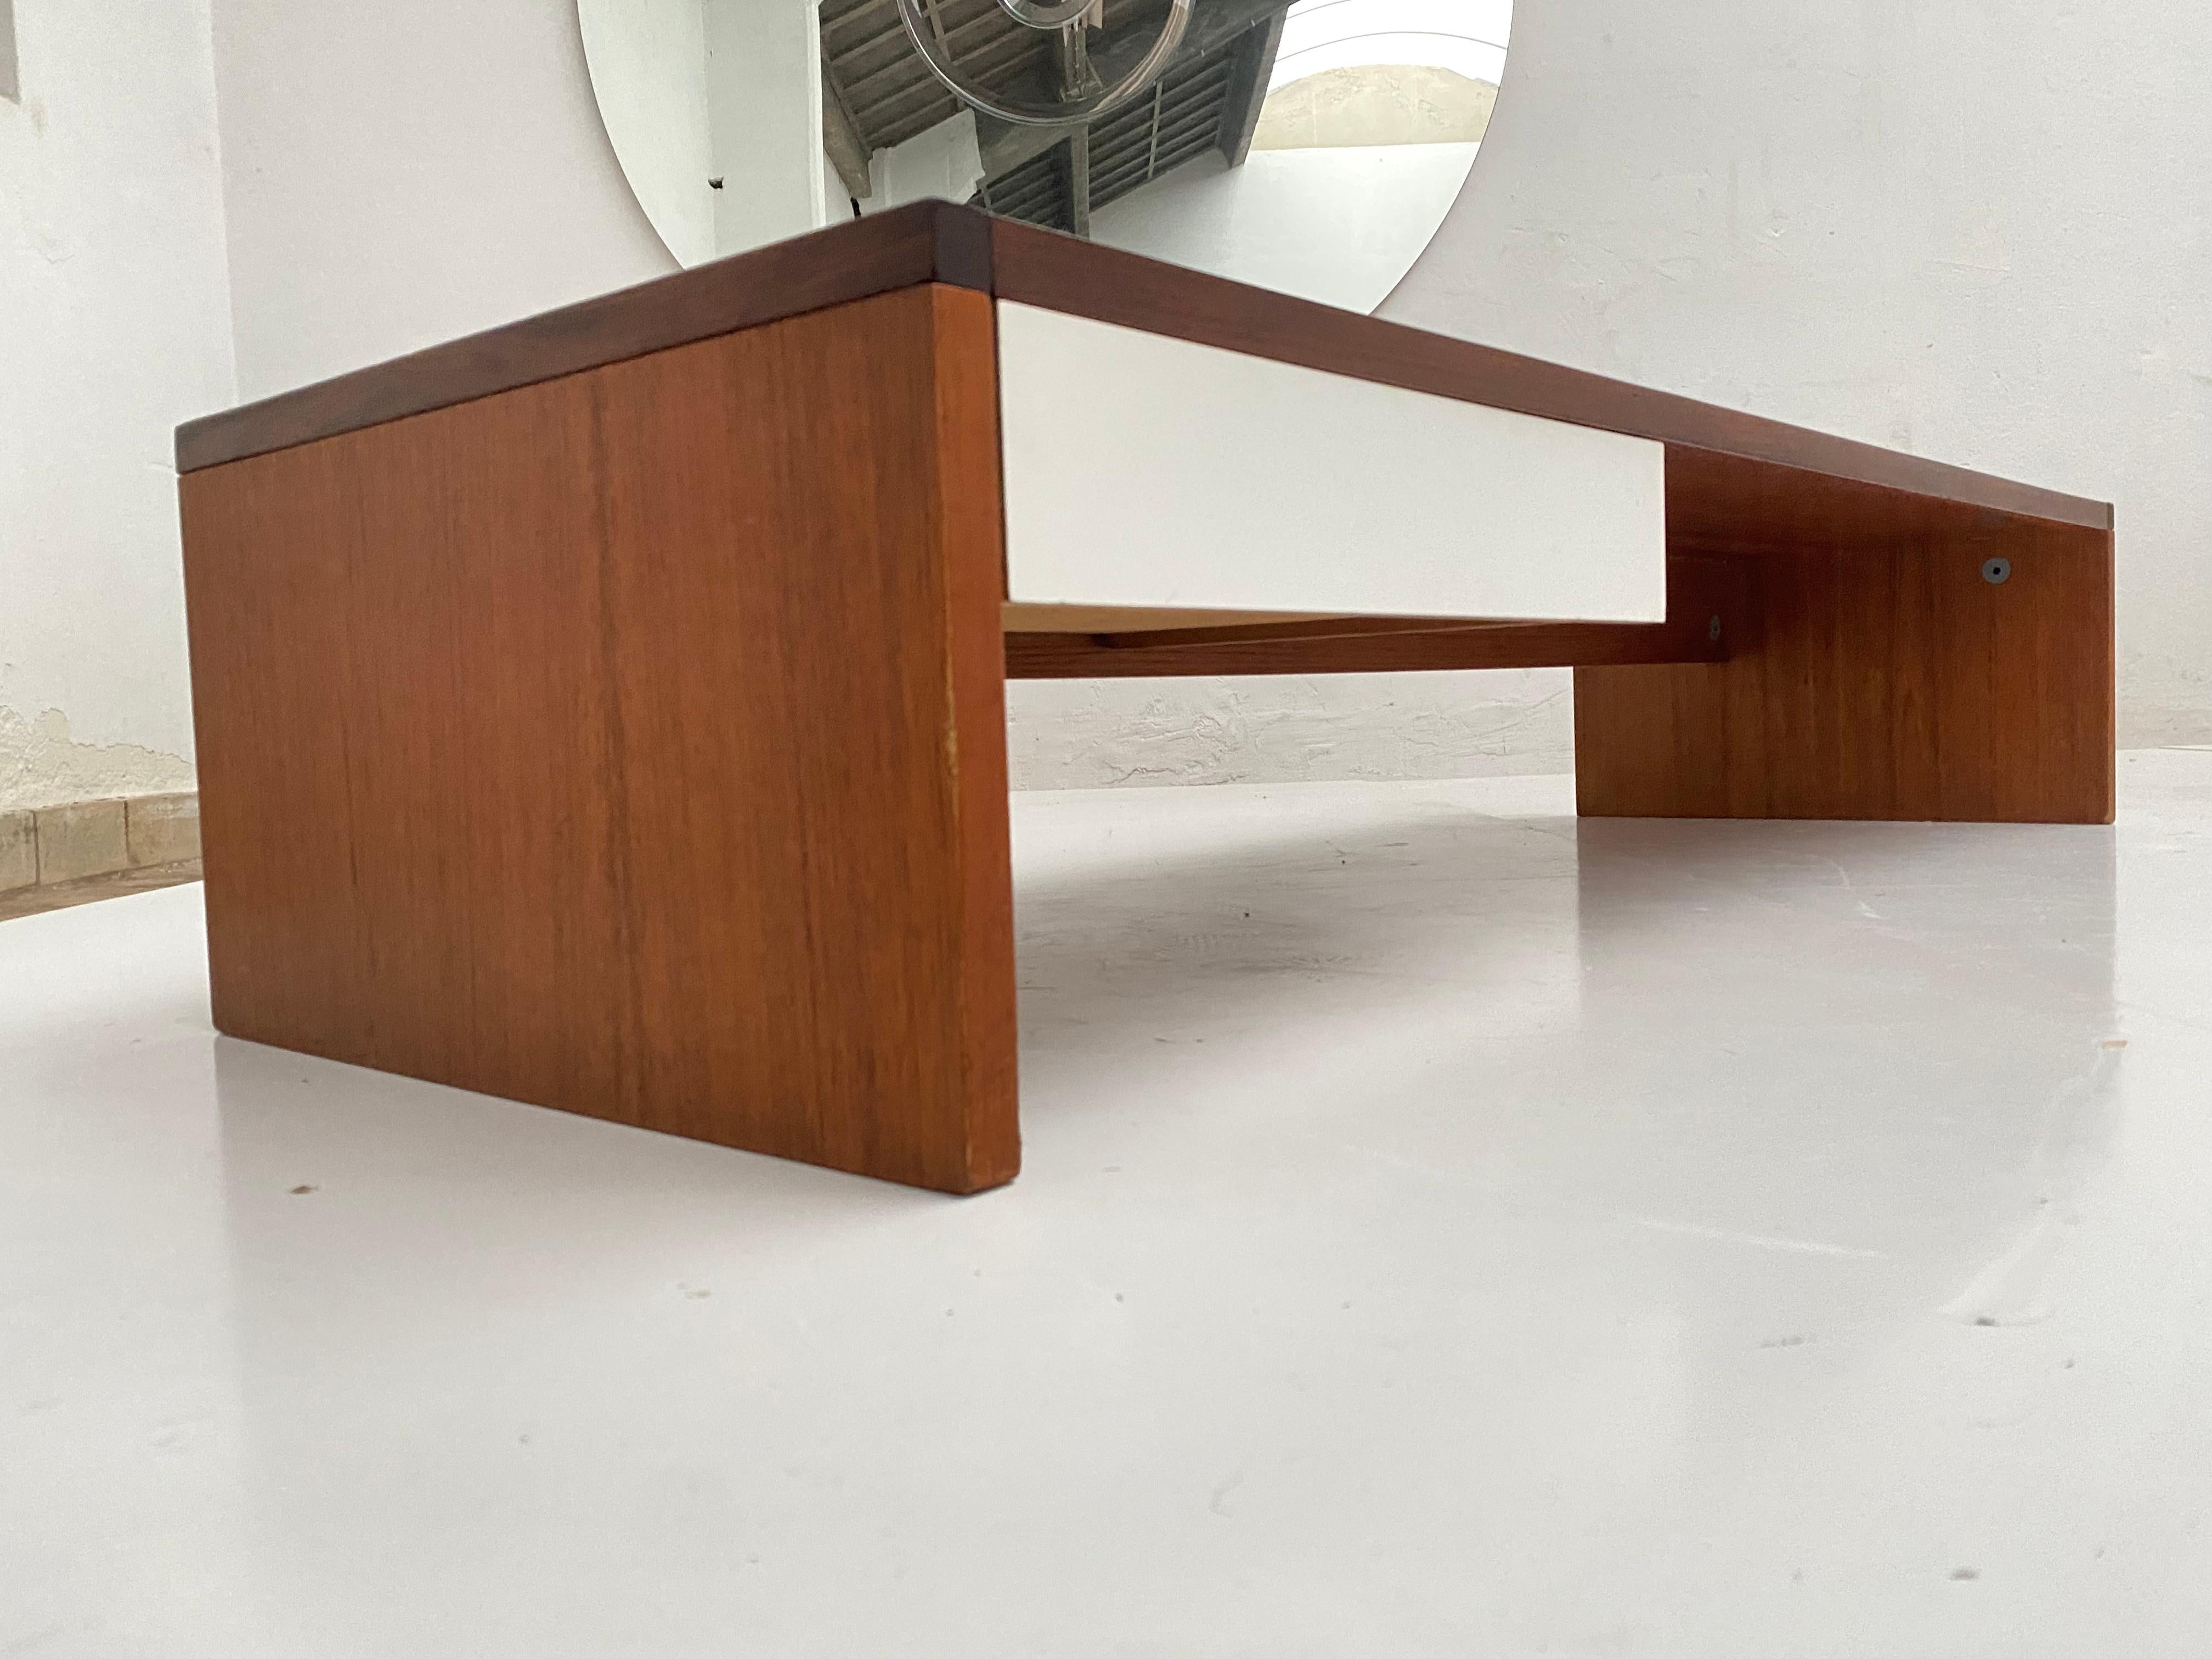 Paire de tables de nuit surdimensionnées du designer néerlandais Cees Braakman.

Teck avec dessus en formica blanc et un tiroir.

Les meubles Pastoe ont toujours été fabriqués et annoncés comme étant 